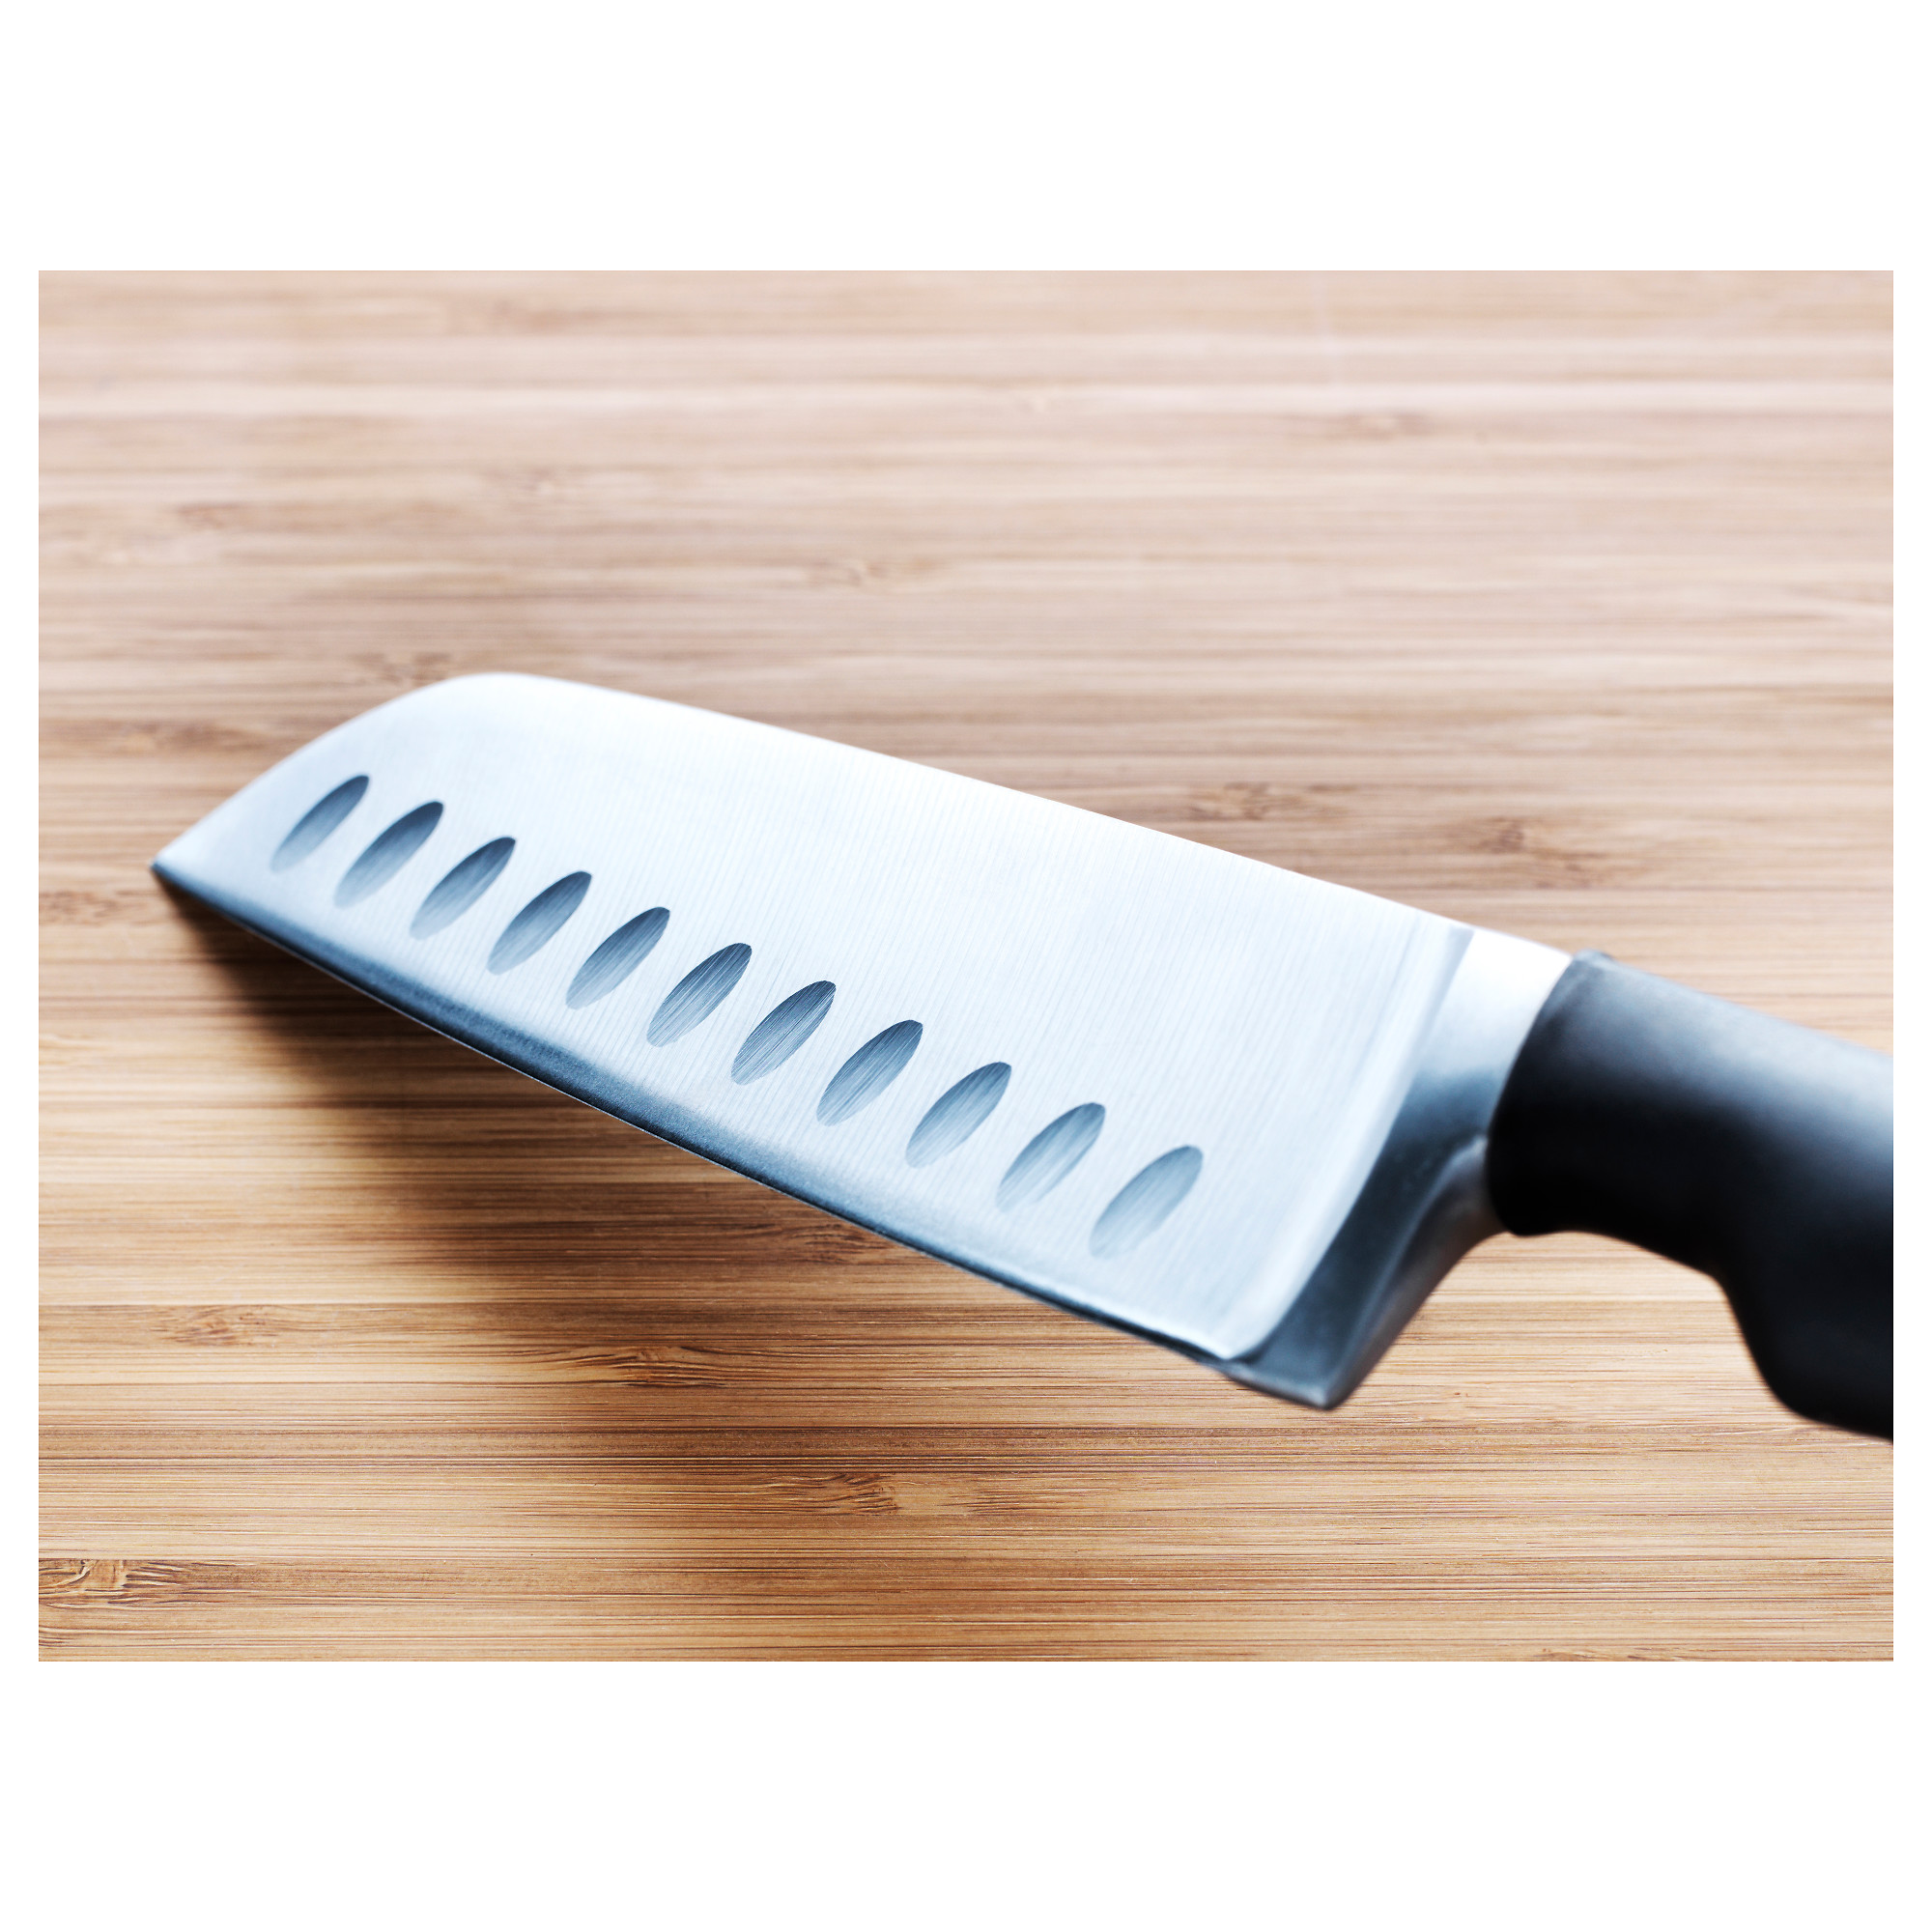 VÖRDA vegetable knife